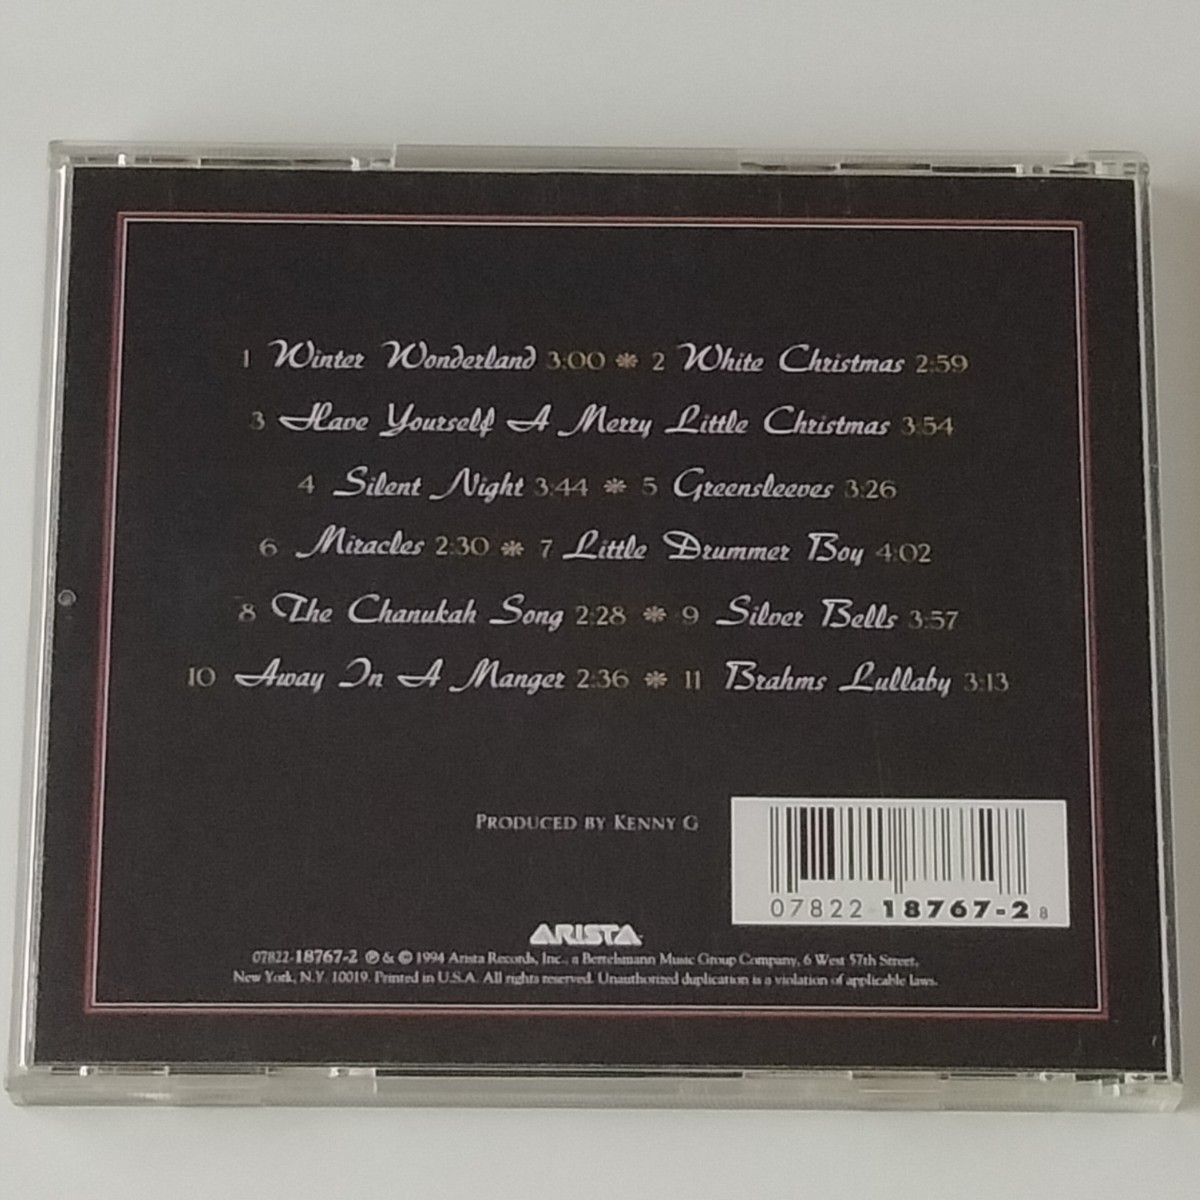 【輸入盤CD】KENNY G/MIRACLES THE HOLIDAY ALBUM(18767-2)ケニー・G/ミラクルズ/クリスマス・アルバム/1994年_画像2